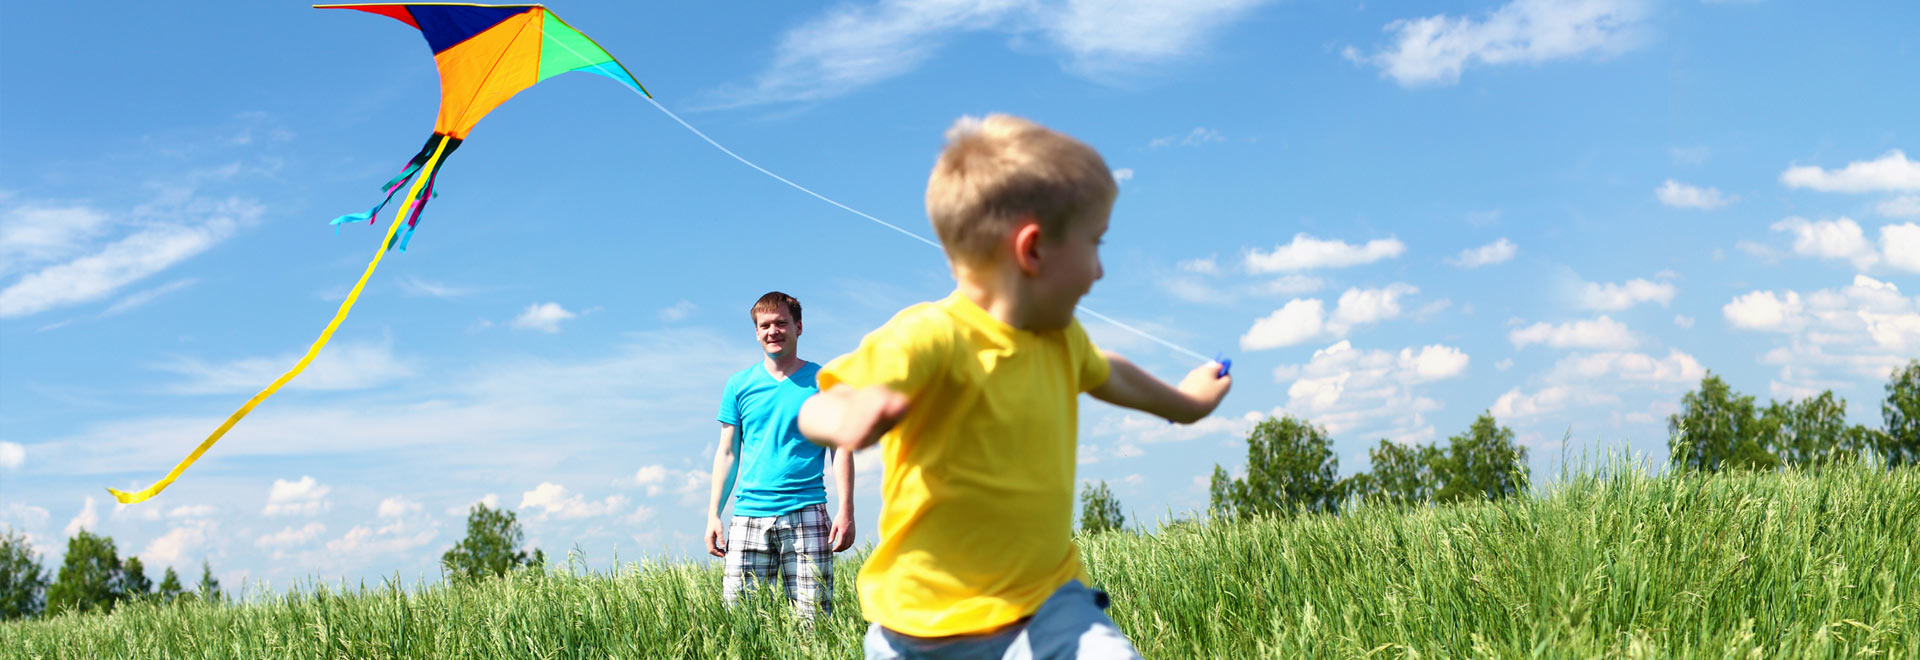 Kid with kite - slider element